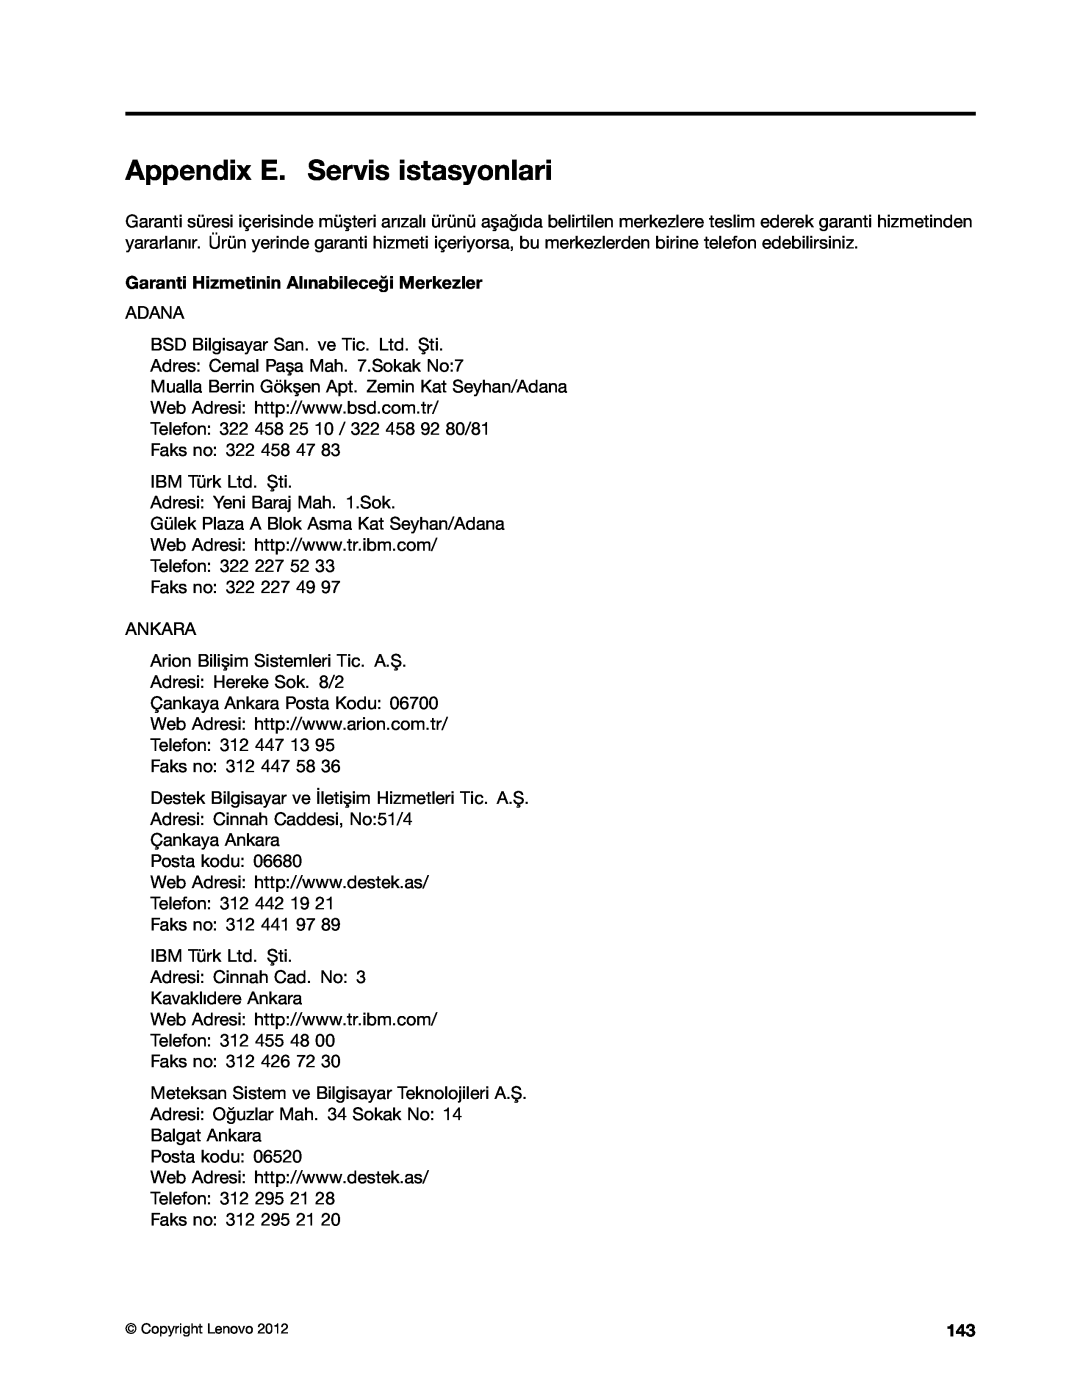 Lenovo 2697, 2756D7U manual Appendix E. Servis istasyonlari, Garanti Hizmetinin Alınabileceği Merkezler 